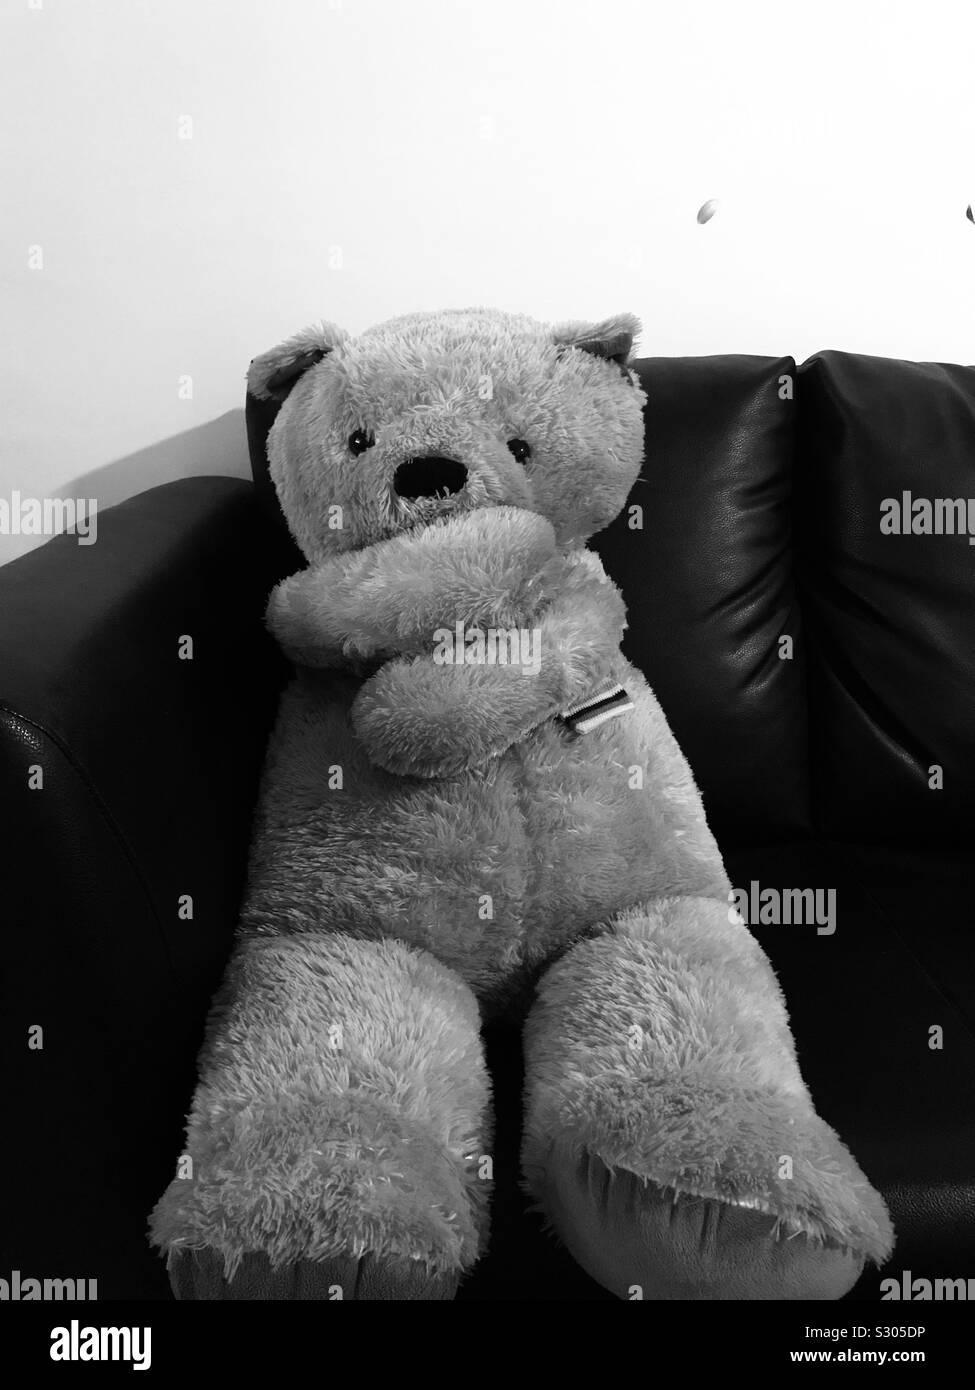 Orso gigante Teddy poggiato su un divano, bianco e nero quadro-in un ambiente minimalista Foto Stock